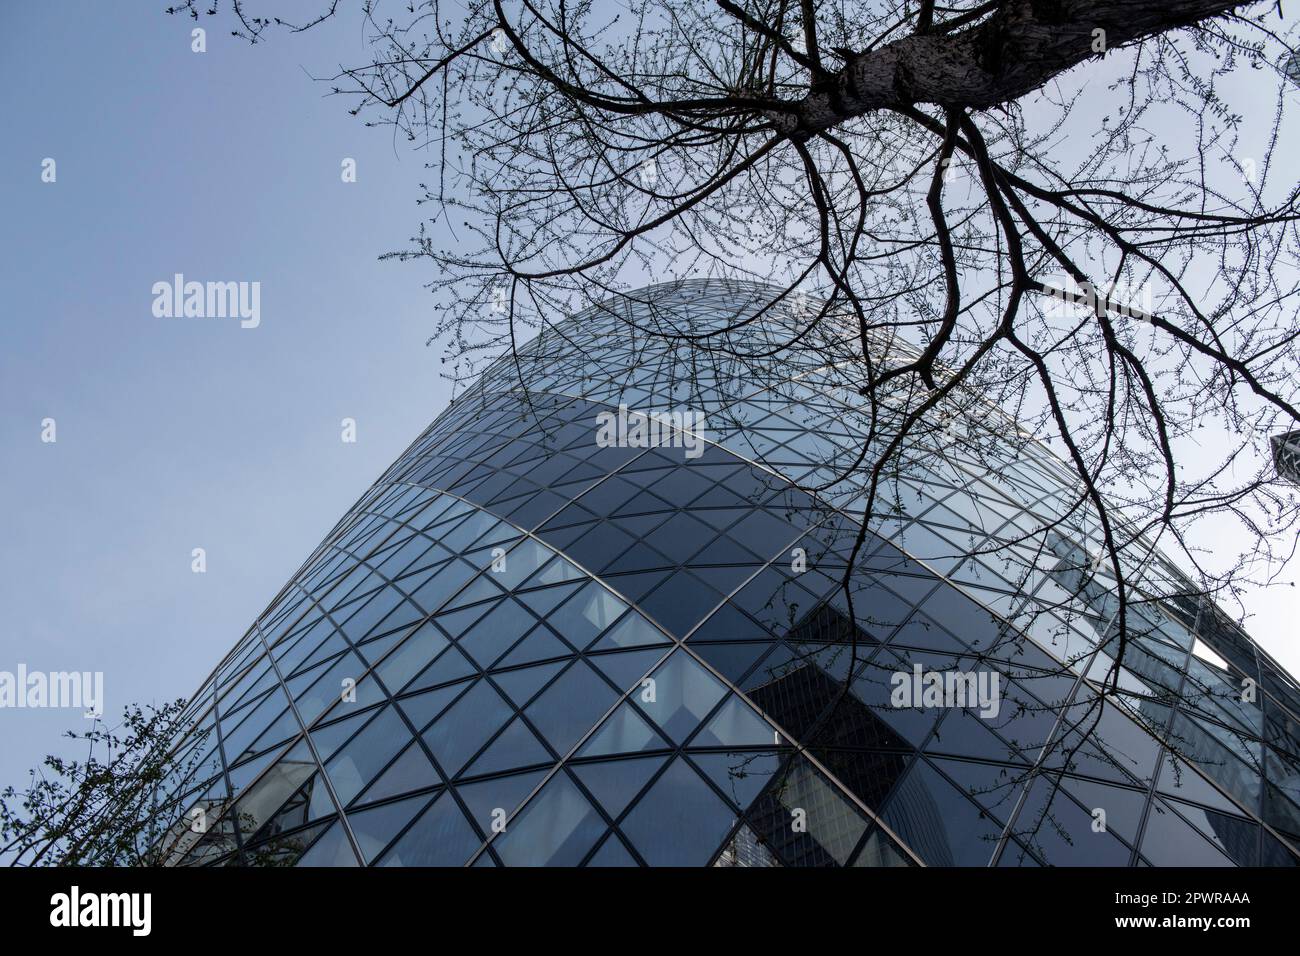 Nahaufnahme des Gherkin-Gebäudes in der Stadt london. Die Glasscheiben erscheinen gekrümmt, sind es aber nicht. Stockfoto